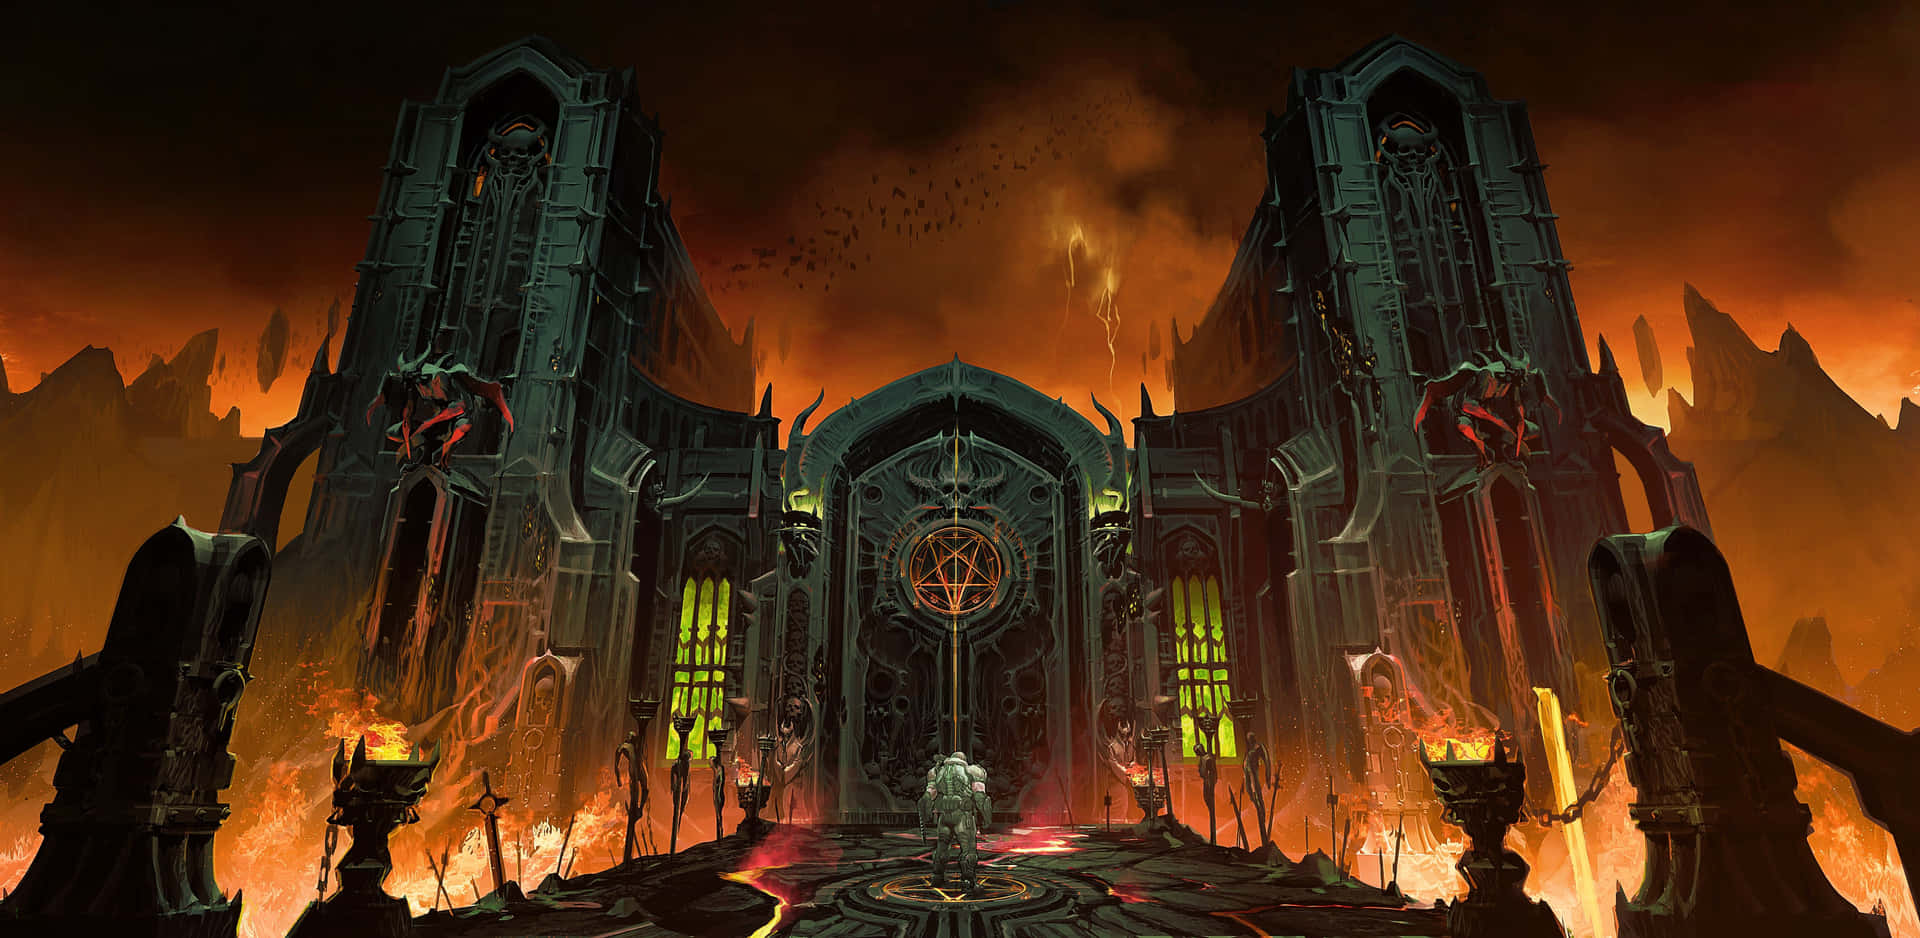 Doom Eternal - Slayer battling demons in an infernal realm